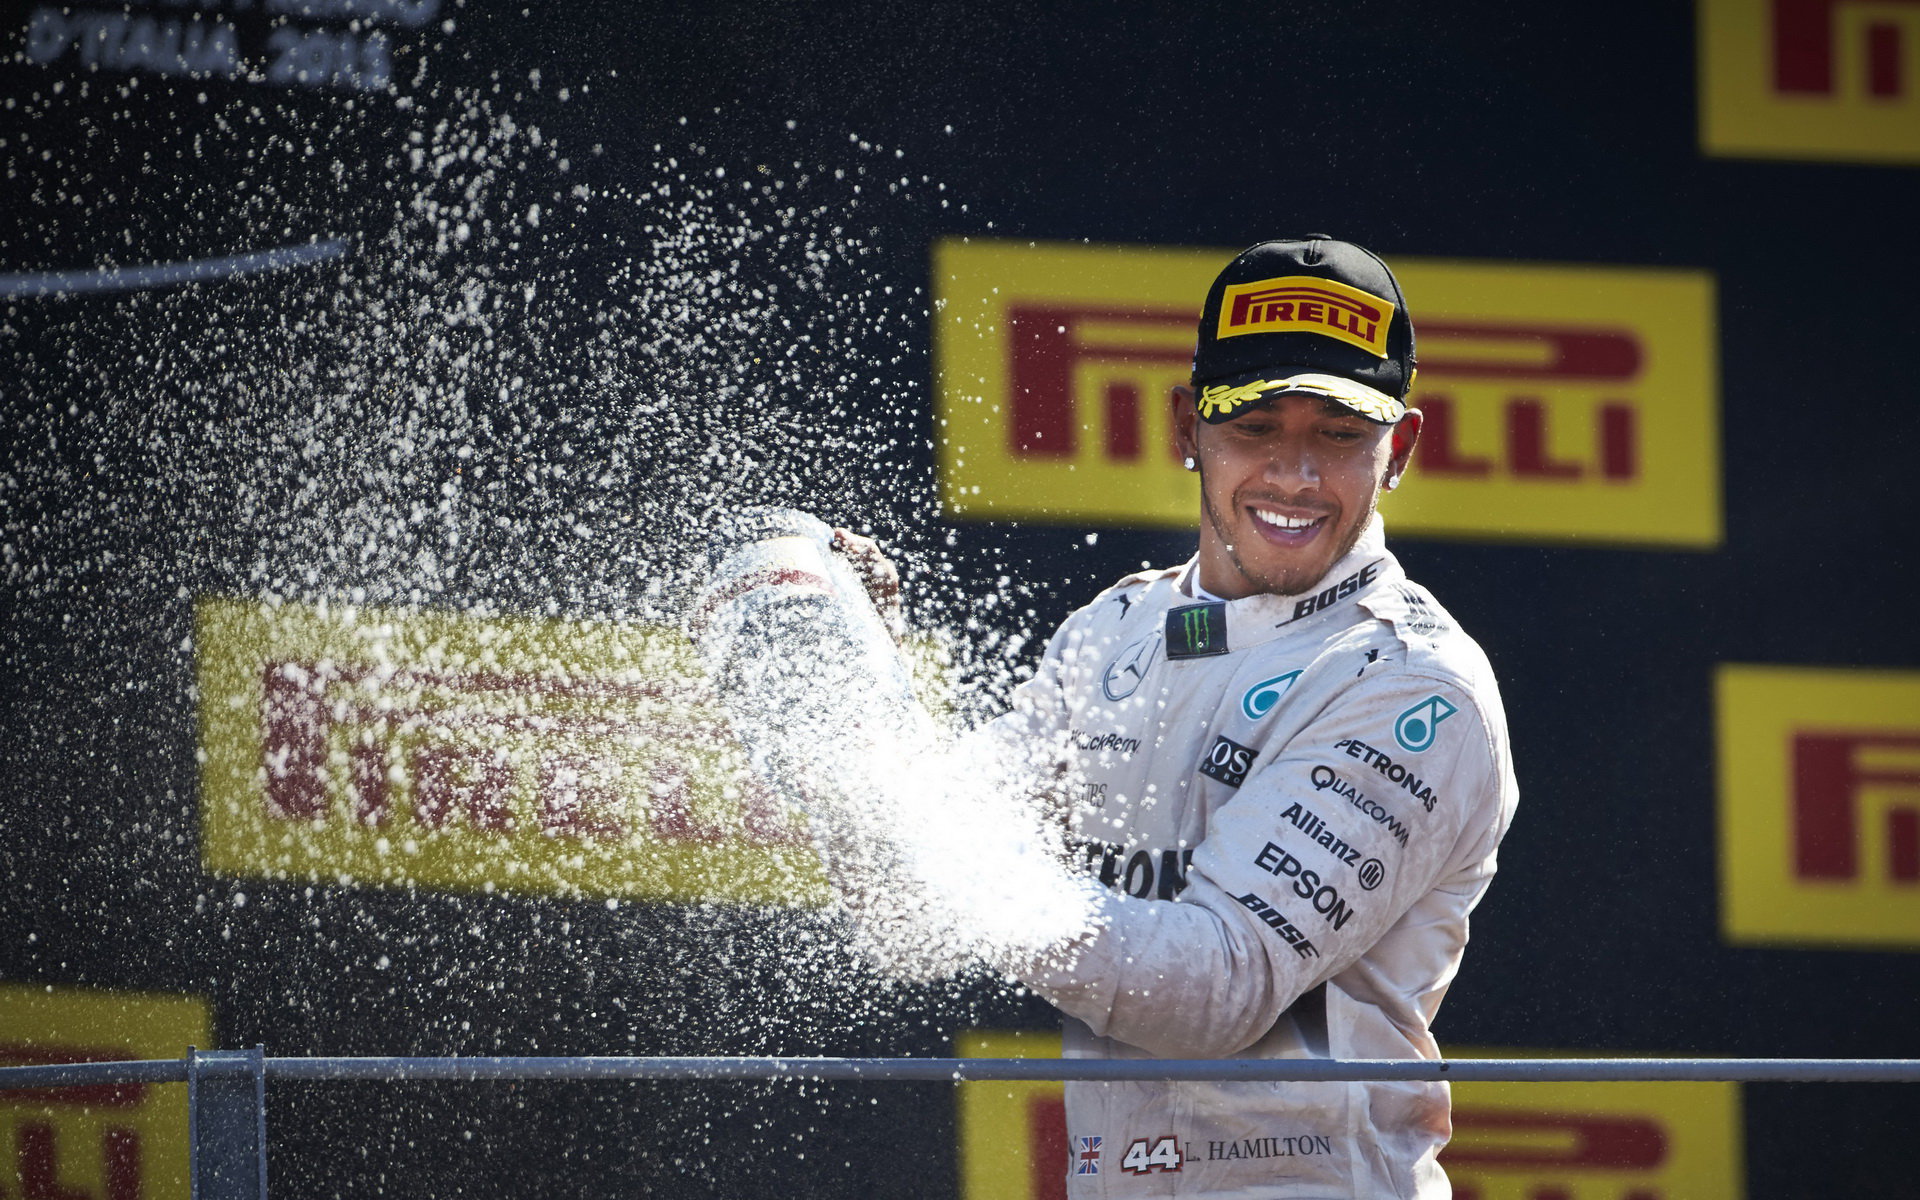 Lewis Hamilton už přemýšlí o tom, co udělá po odchodu do závodnického důchodu